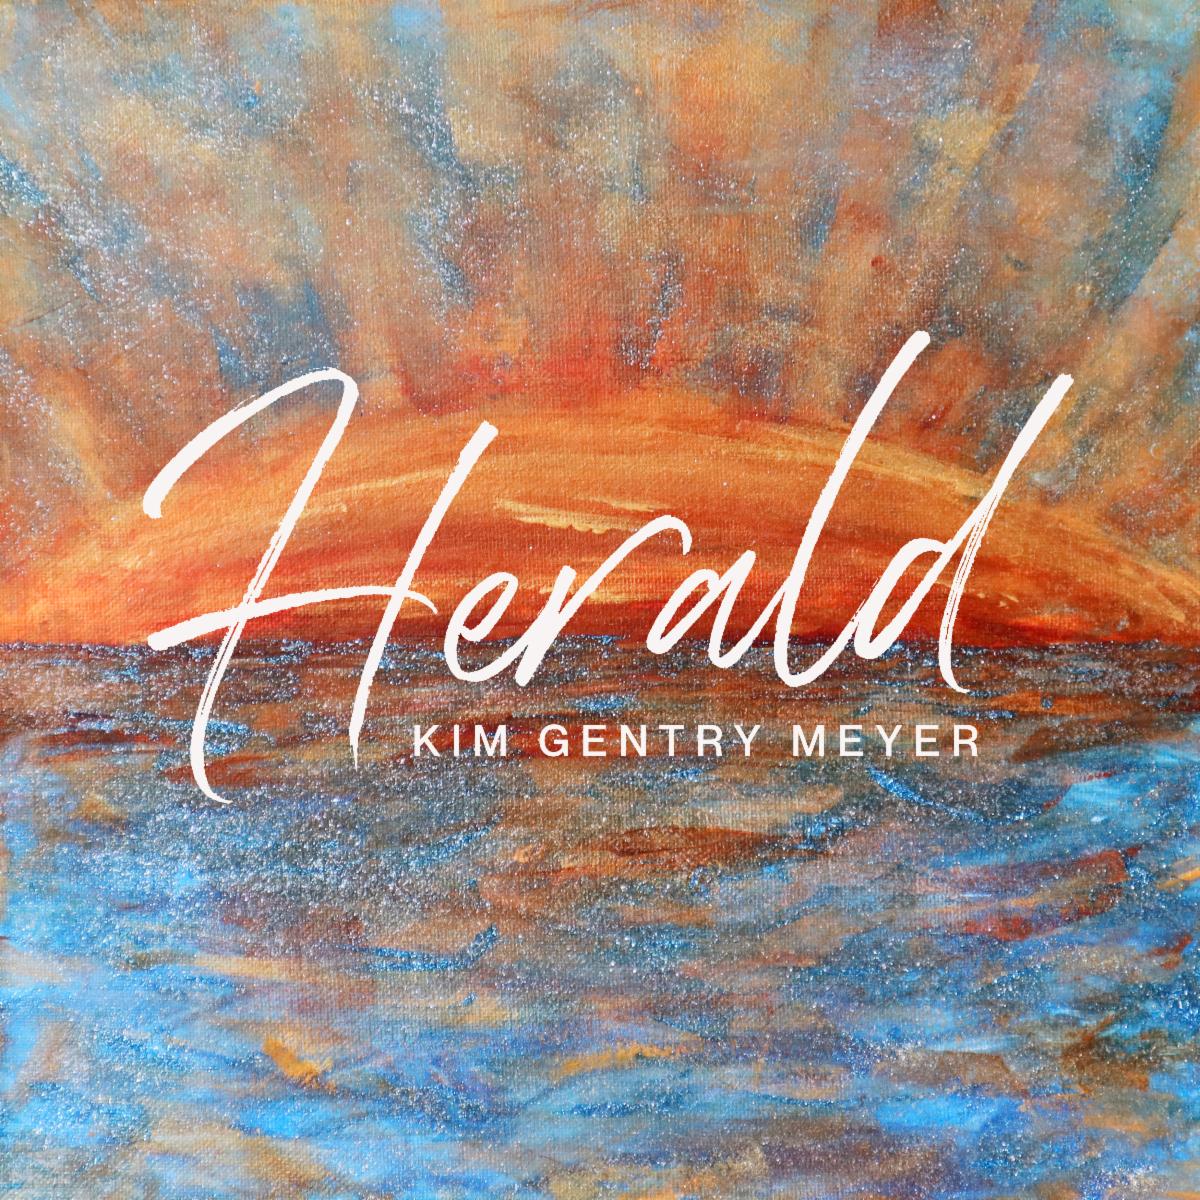 Kim Gentry Meyer - Herald